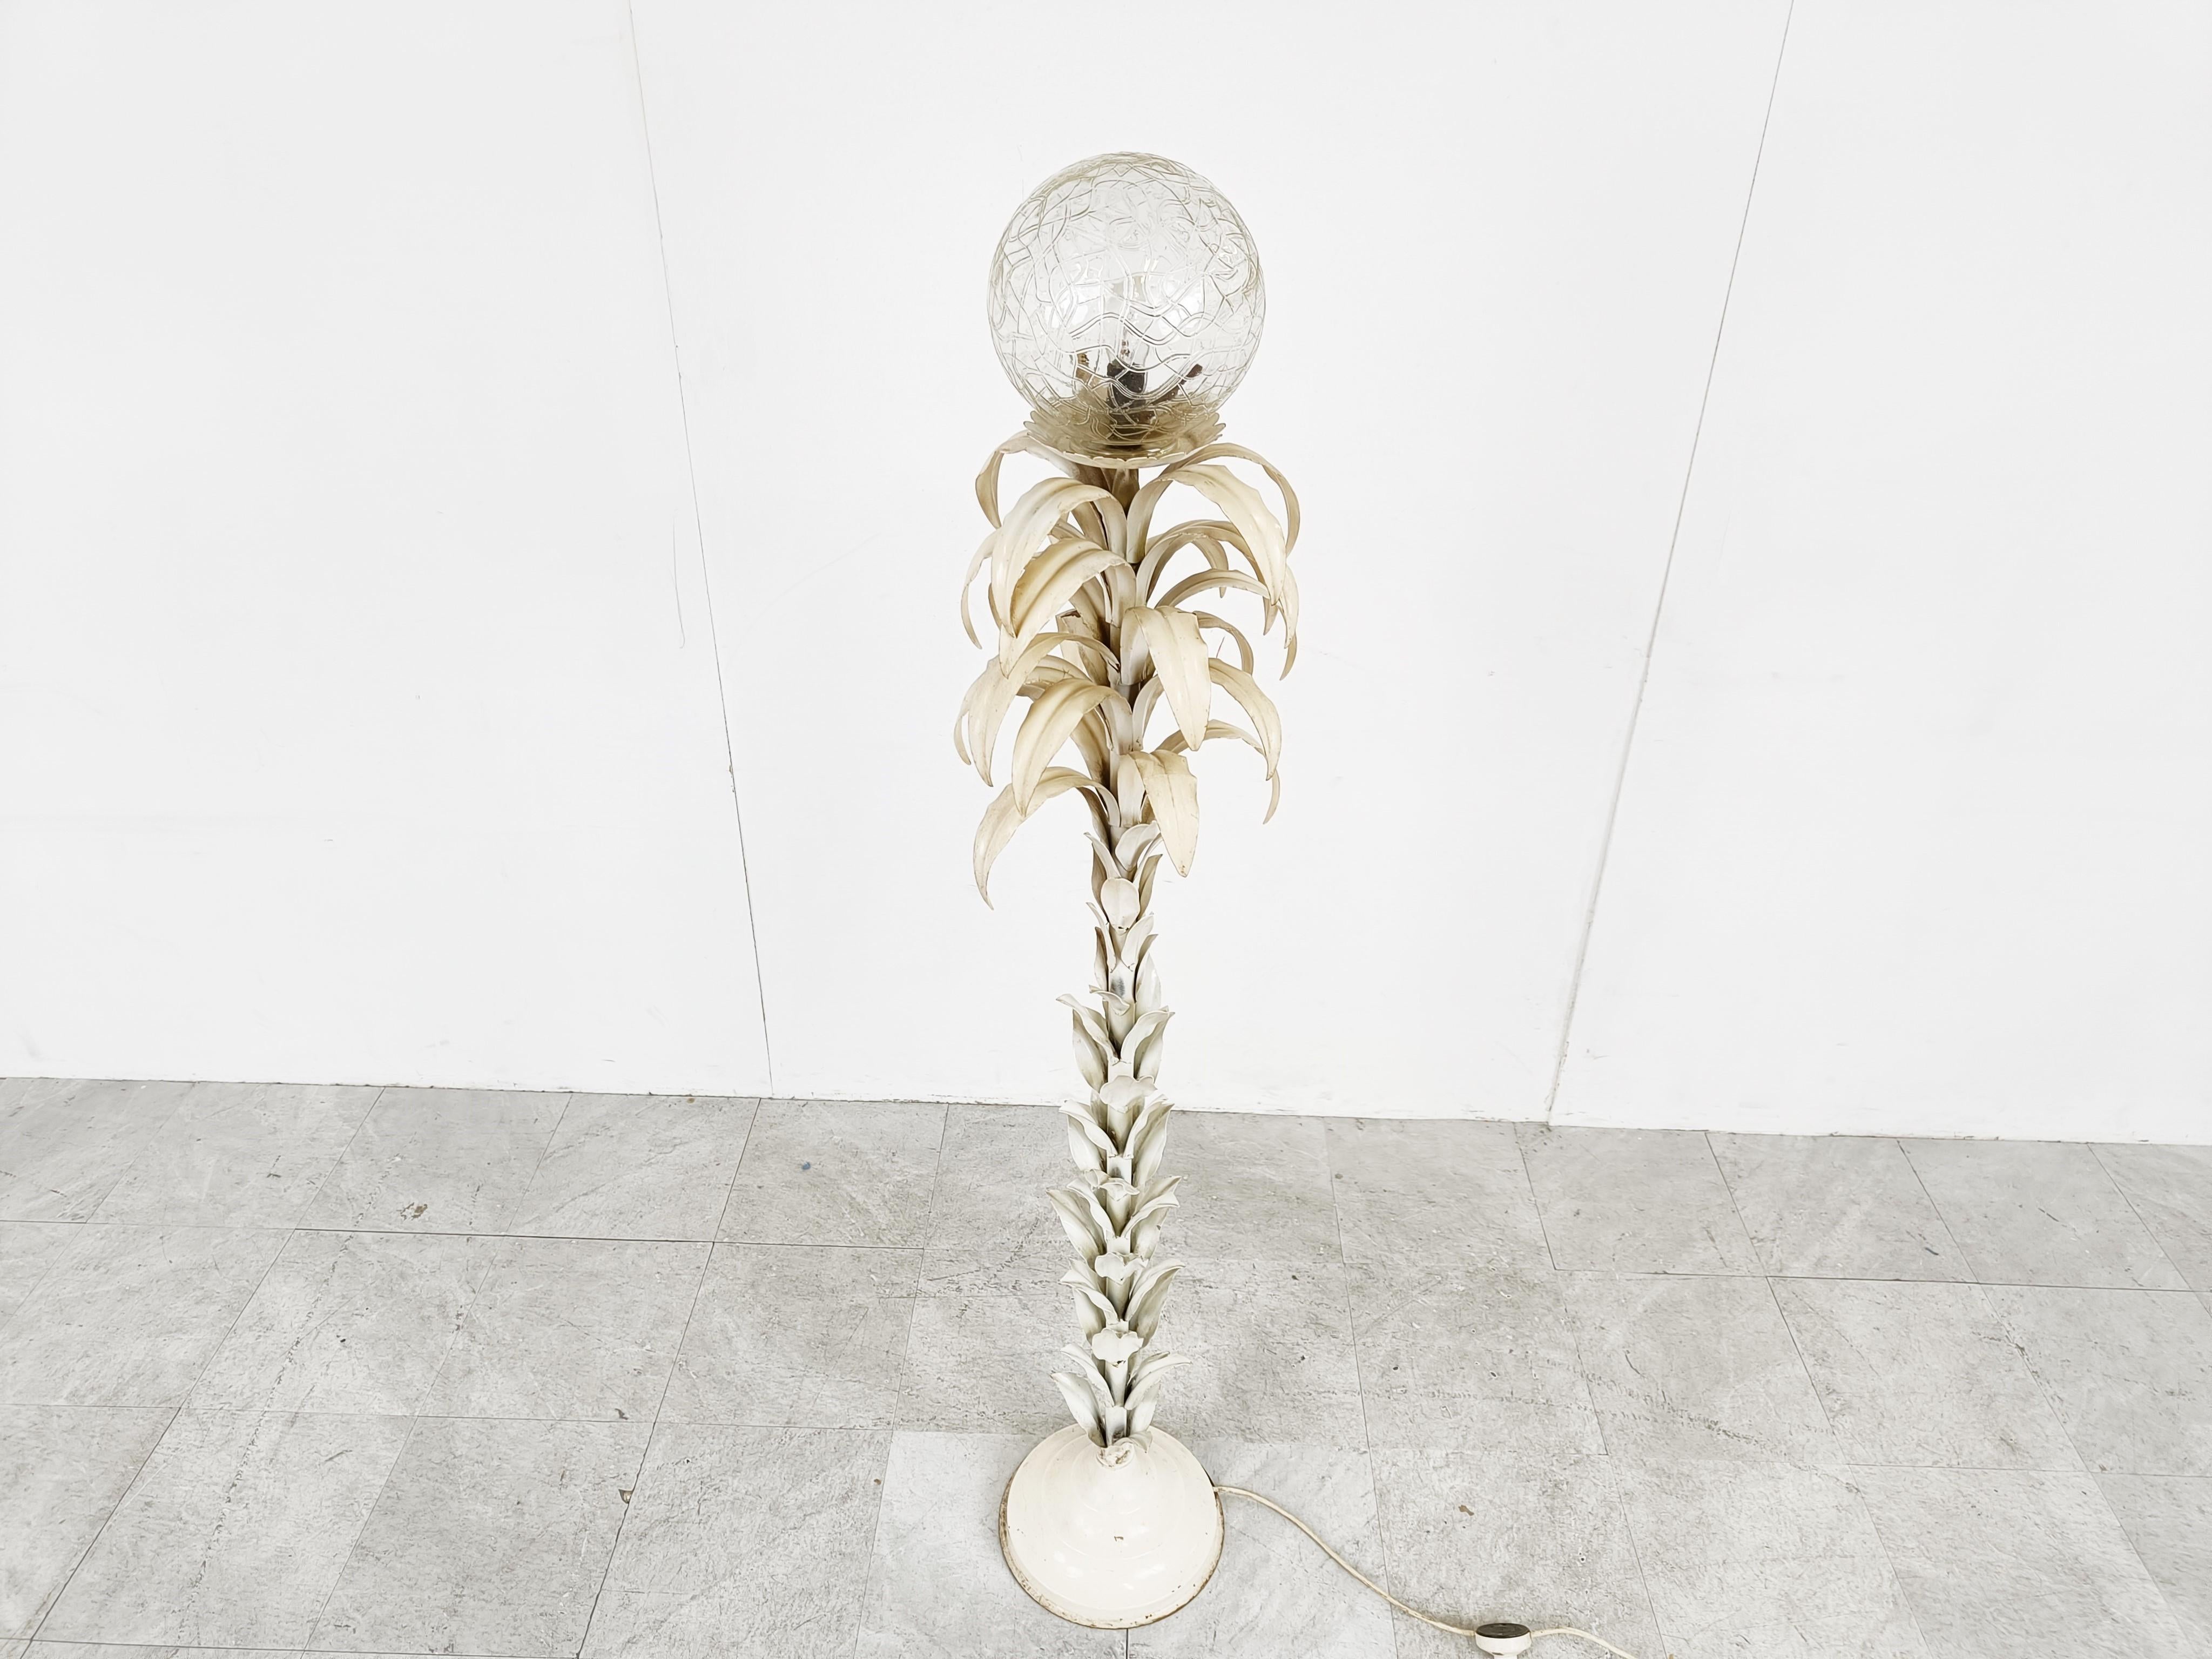 Florale Stehlampe aus der Mitte des Jahrhunderts mit einer schönen bernsteinfarbenen, handgefertigten Glaskugel.

Weiß lackierte Metallblätter.

Die Stehlampe strahlt ein wunderbares Licht aus.

Originalzustand mit einigen Lackschäden, die den